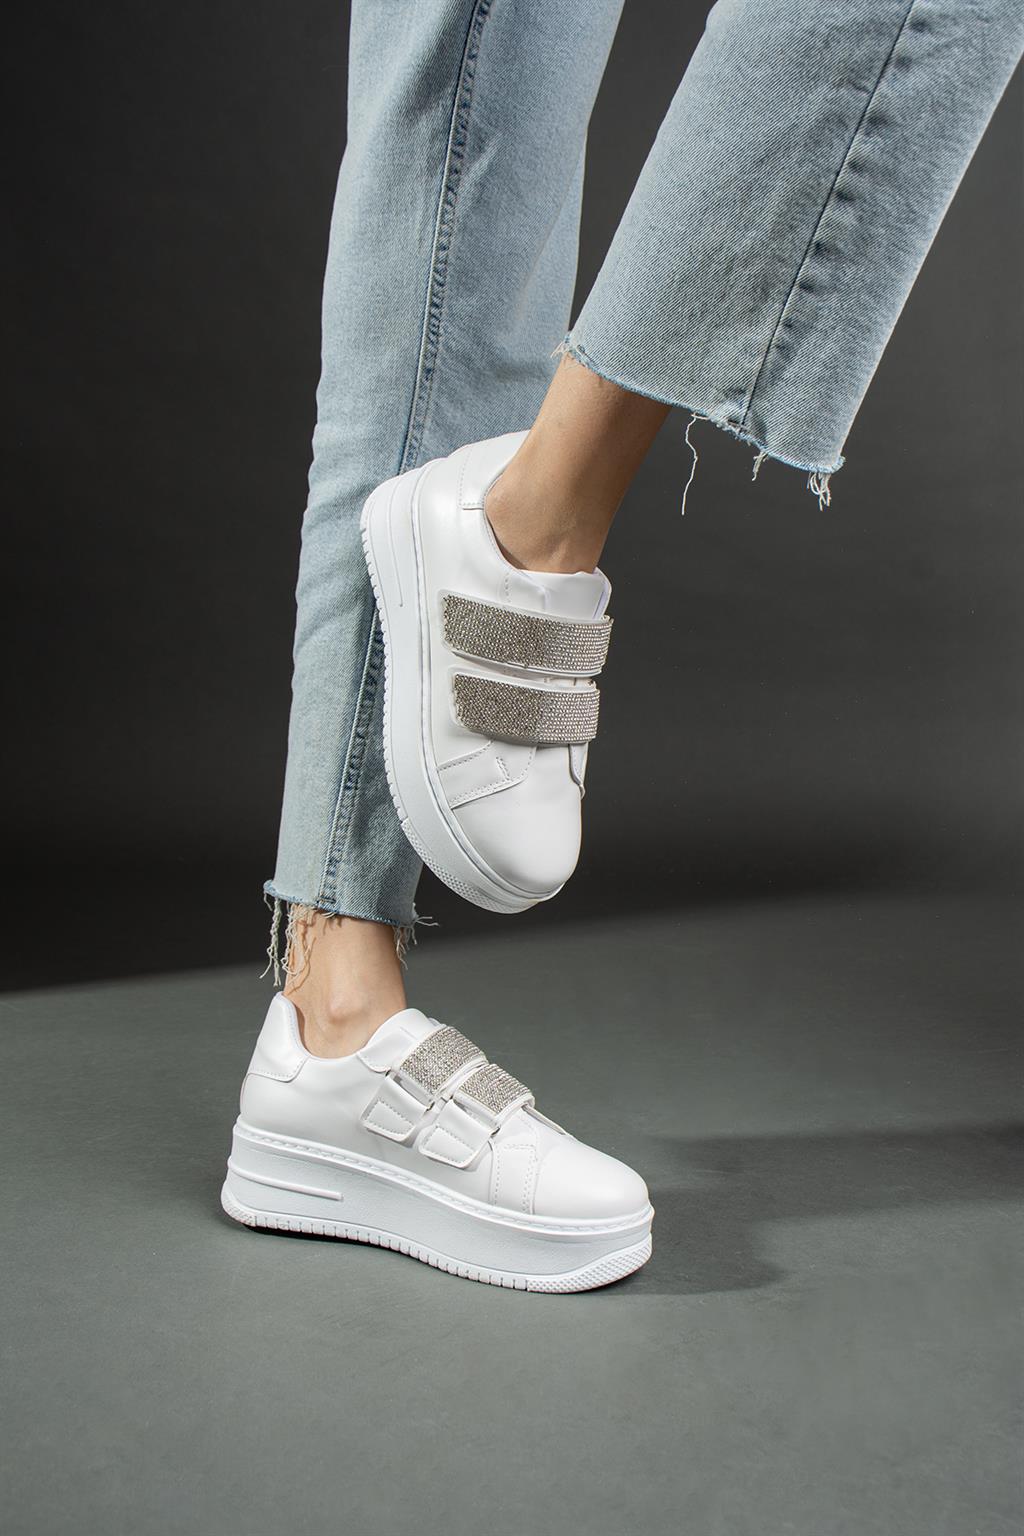 SHOETEK Leni Kadın Sneakers Taşlı Spor Ayakkabı Beyaz Deri